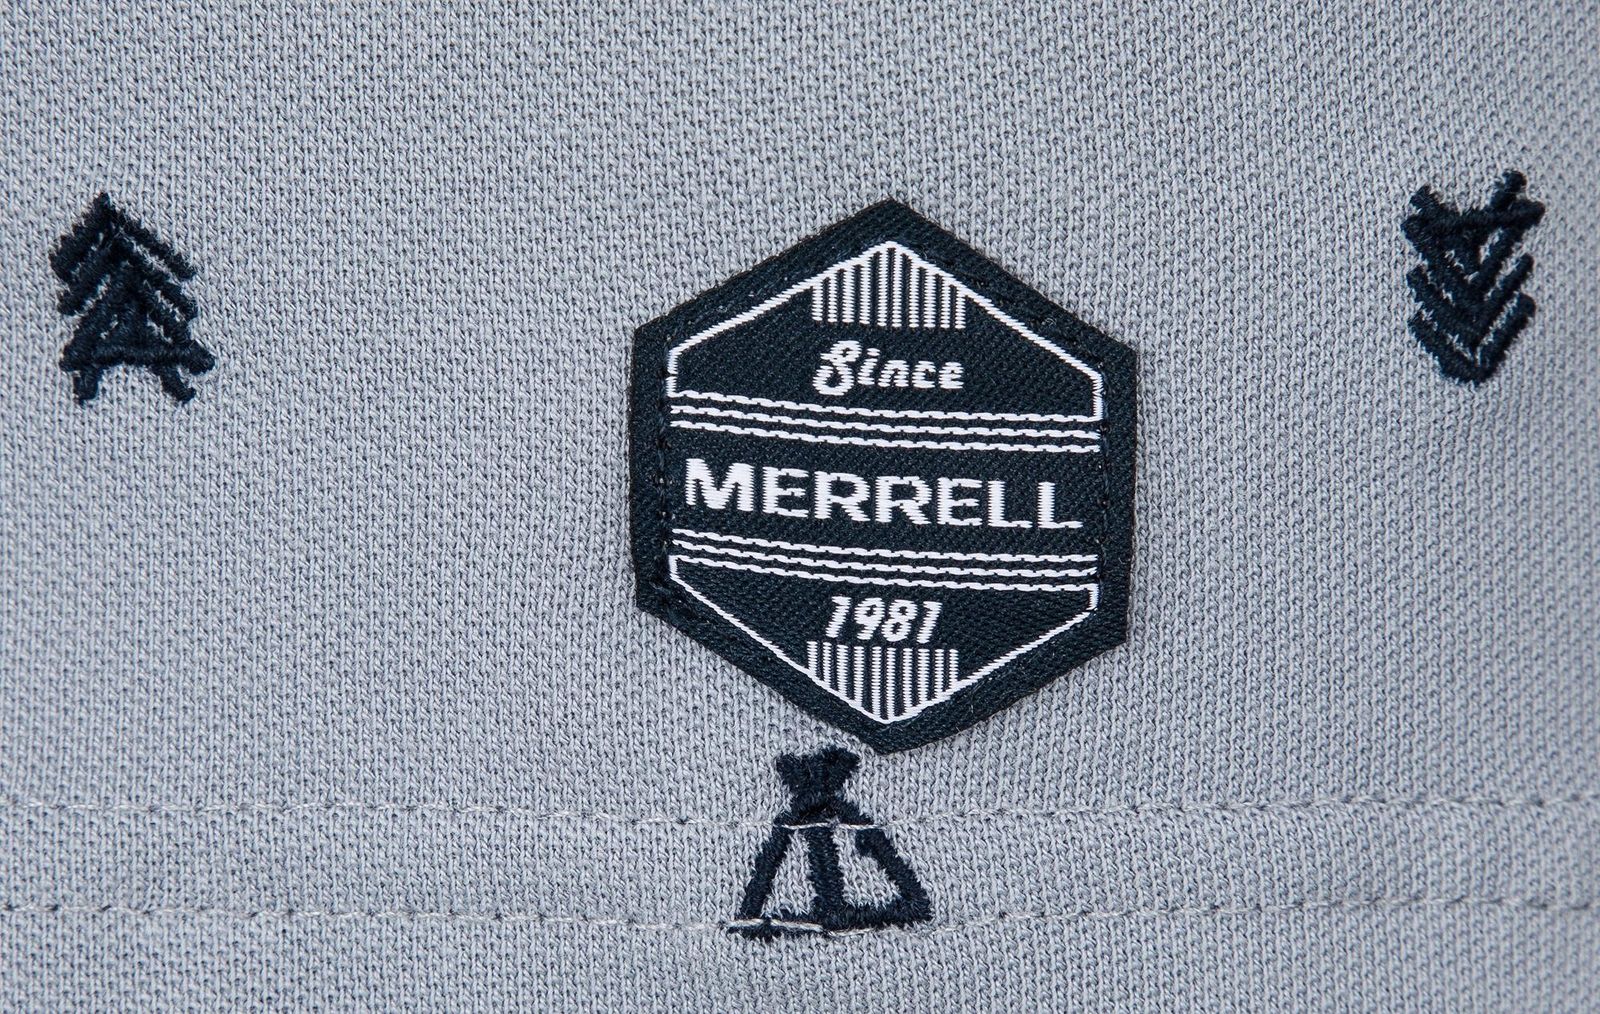   Merrell Men's Polo, : . S19AMRPOM01-Q1.  50